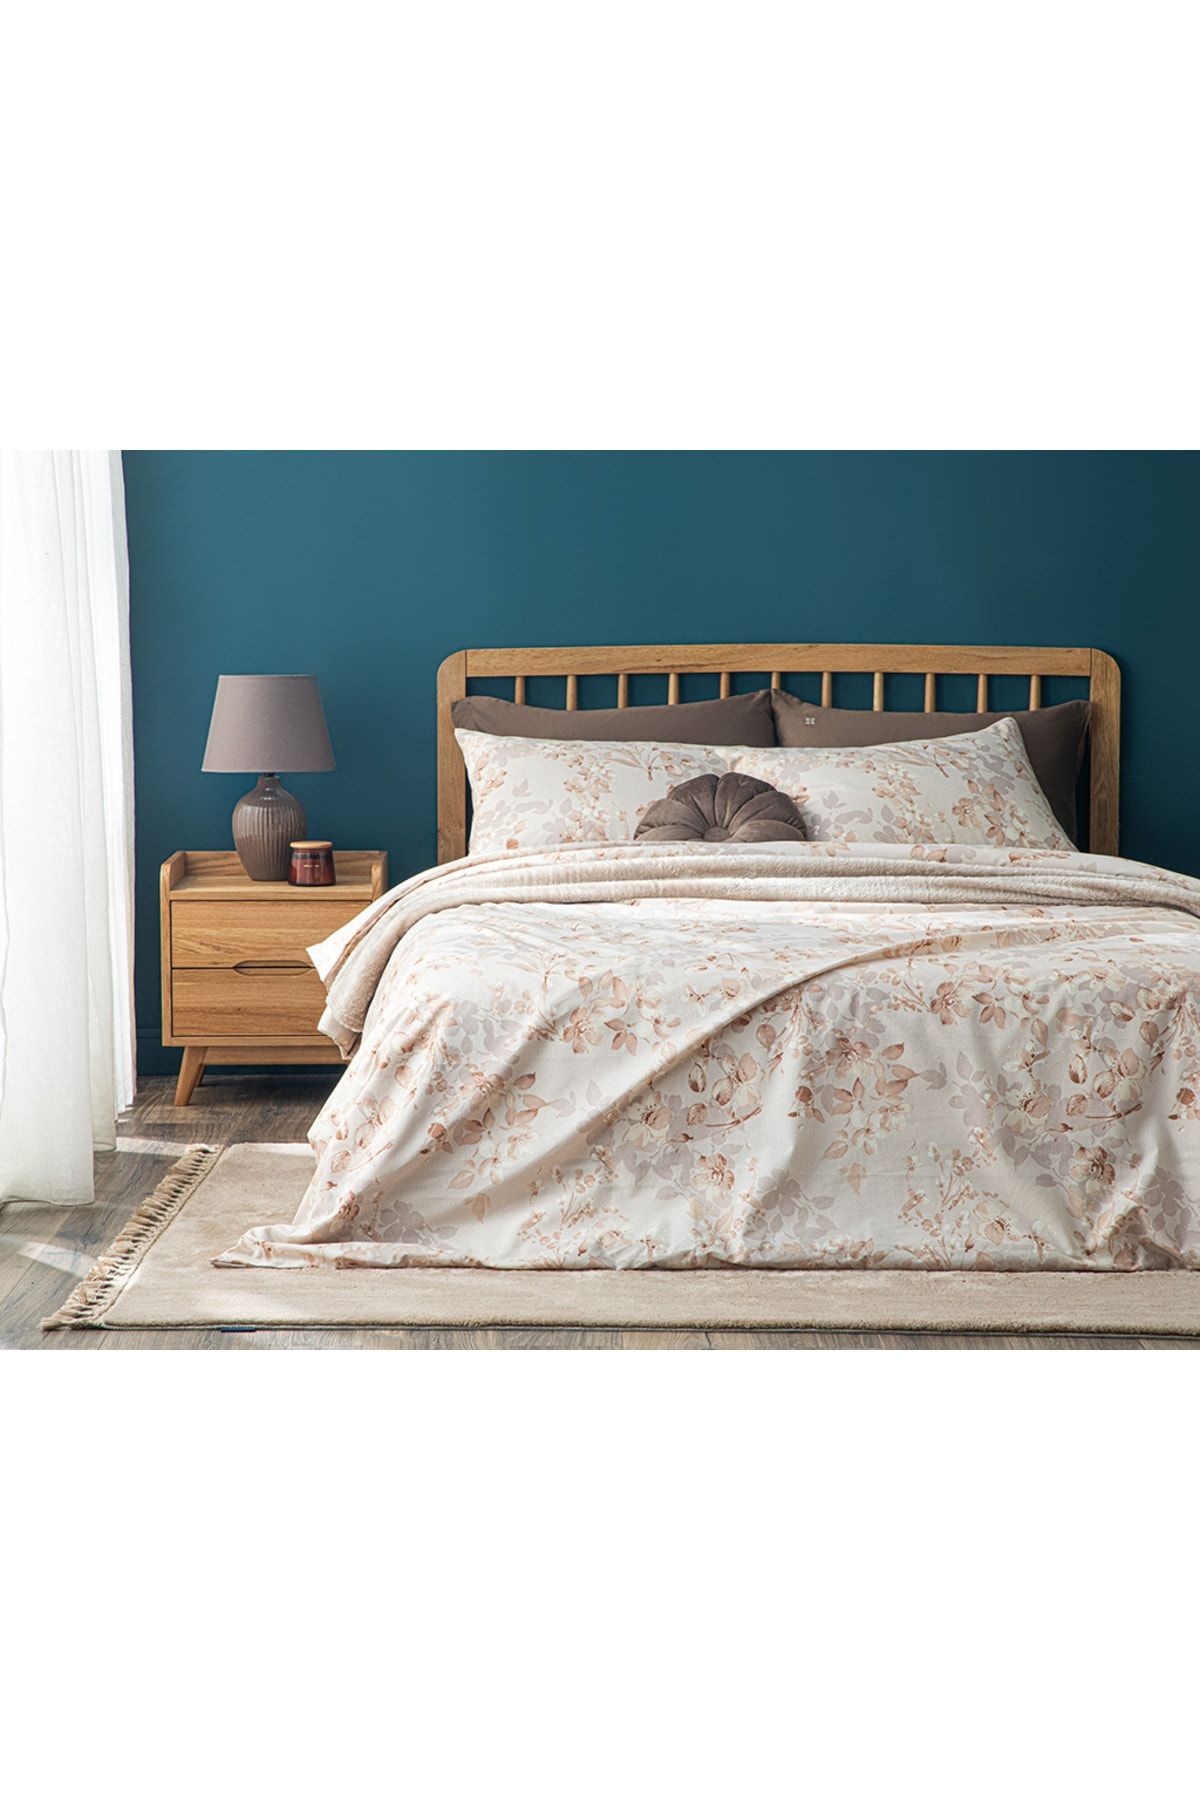 English Home Pure Magnolia Kolay Ütülenir Tek Kişilik Nevresım Takımı 160x220 Cm Terracotta